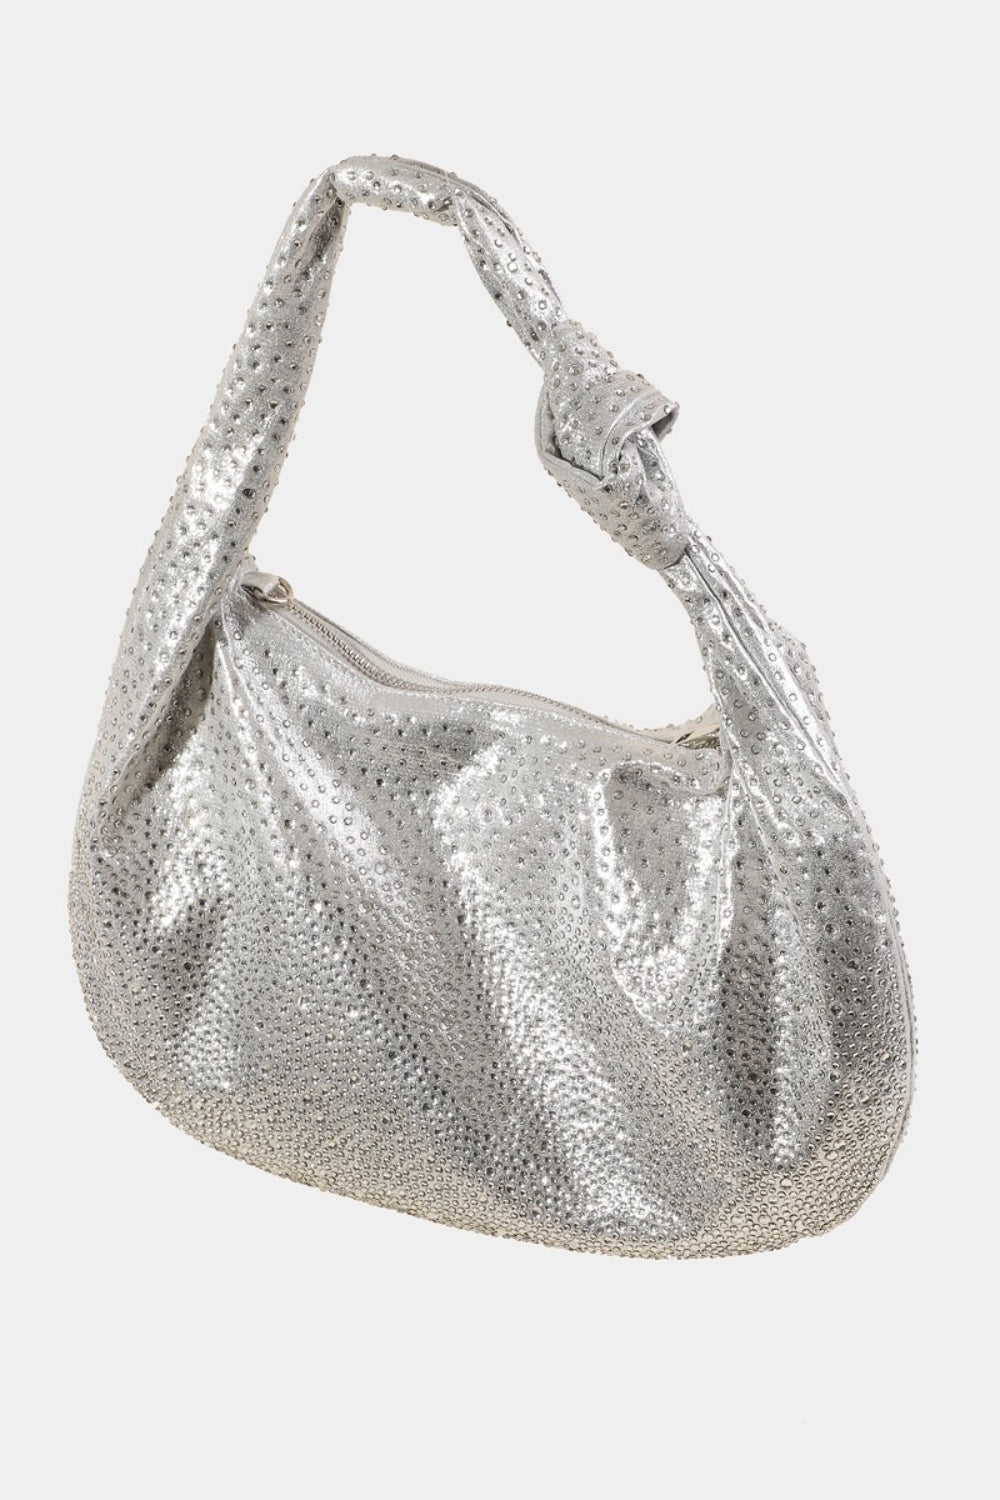 TEEK - Rhinestone Studded Handbag BAG TEEK Trend   